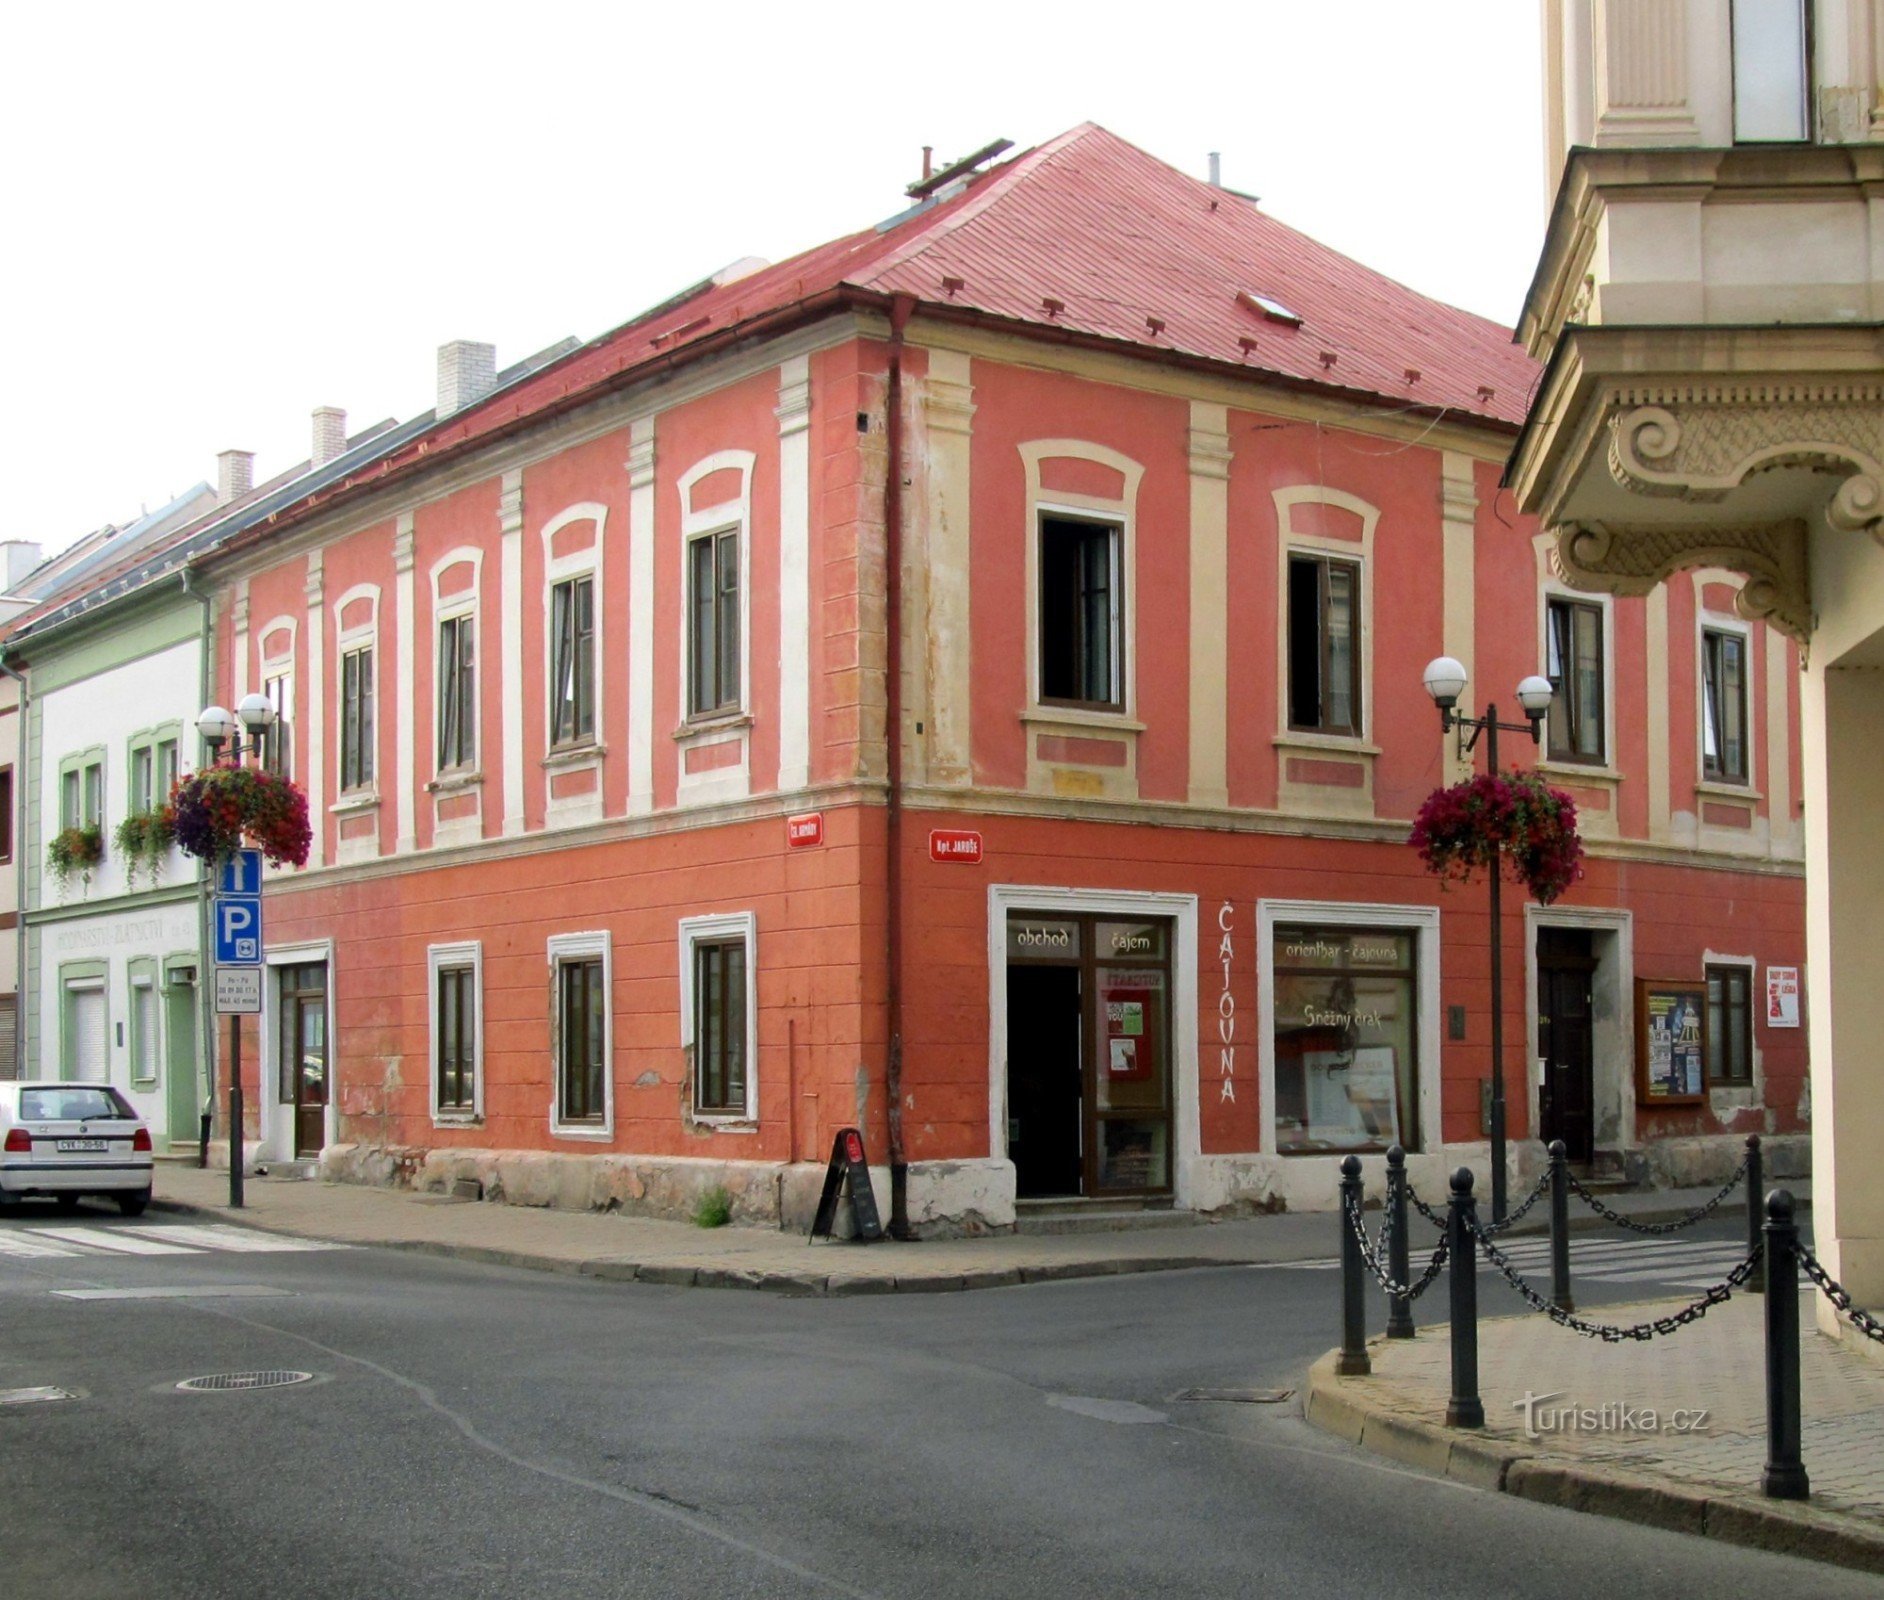 Sněžný drak theehuis in het rode hoekhuis bij de Mírové náměstí in Kadaň.